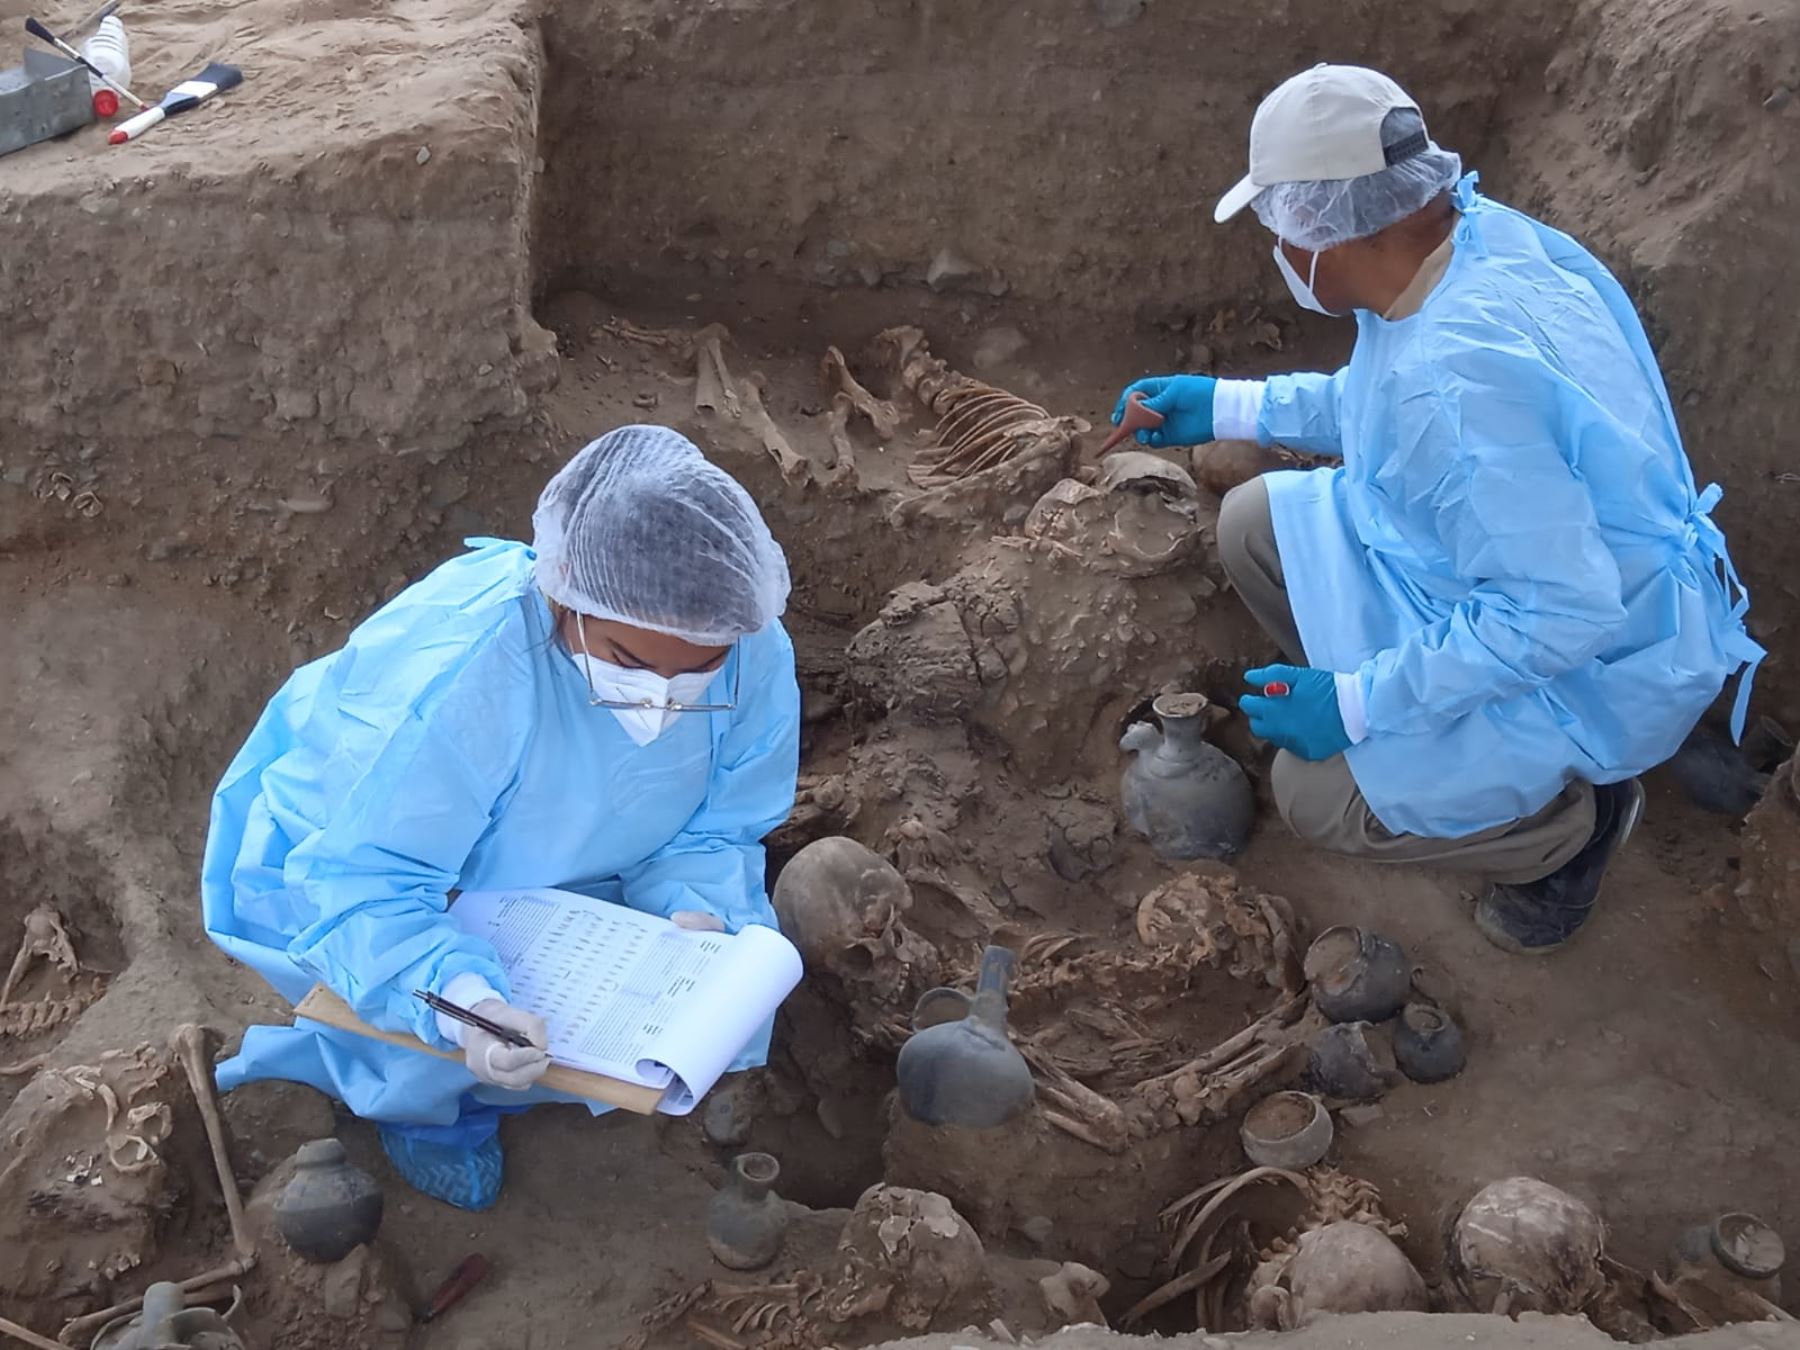 Arqueólogos descubren restos humanos de 25 individuos dentro del complejo arqueológico Chan Chan, ubicado en Trujillo, La Libertad. Foto: Vanessa Graos